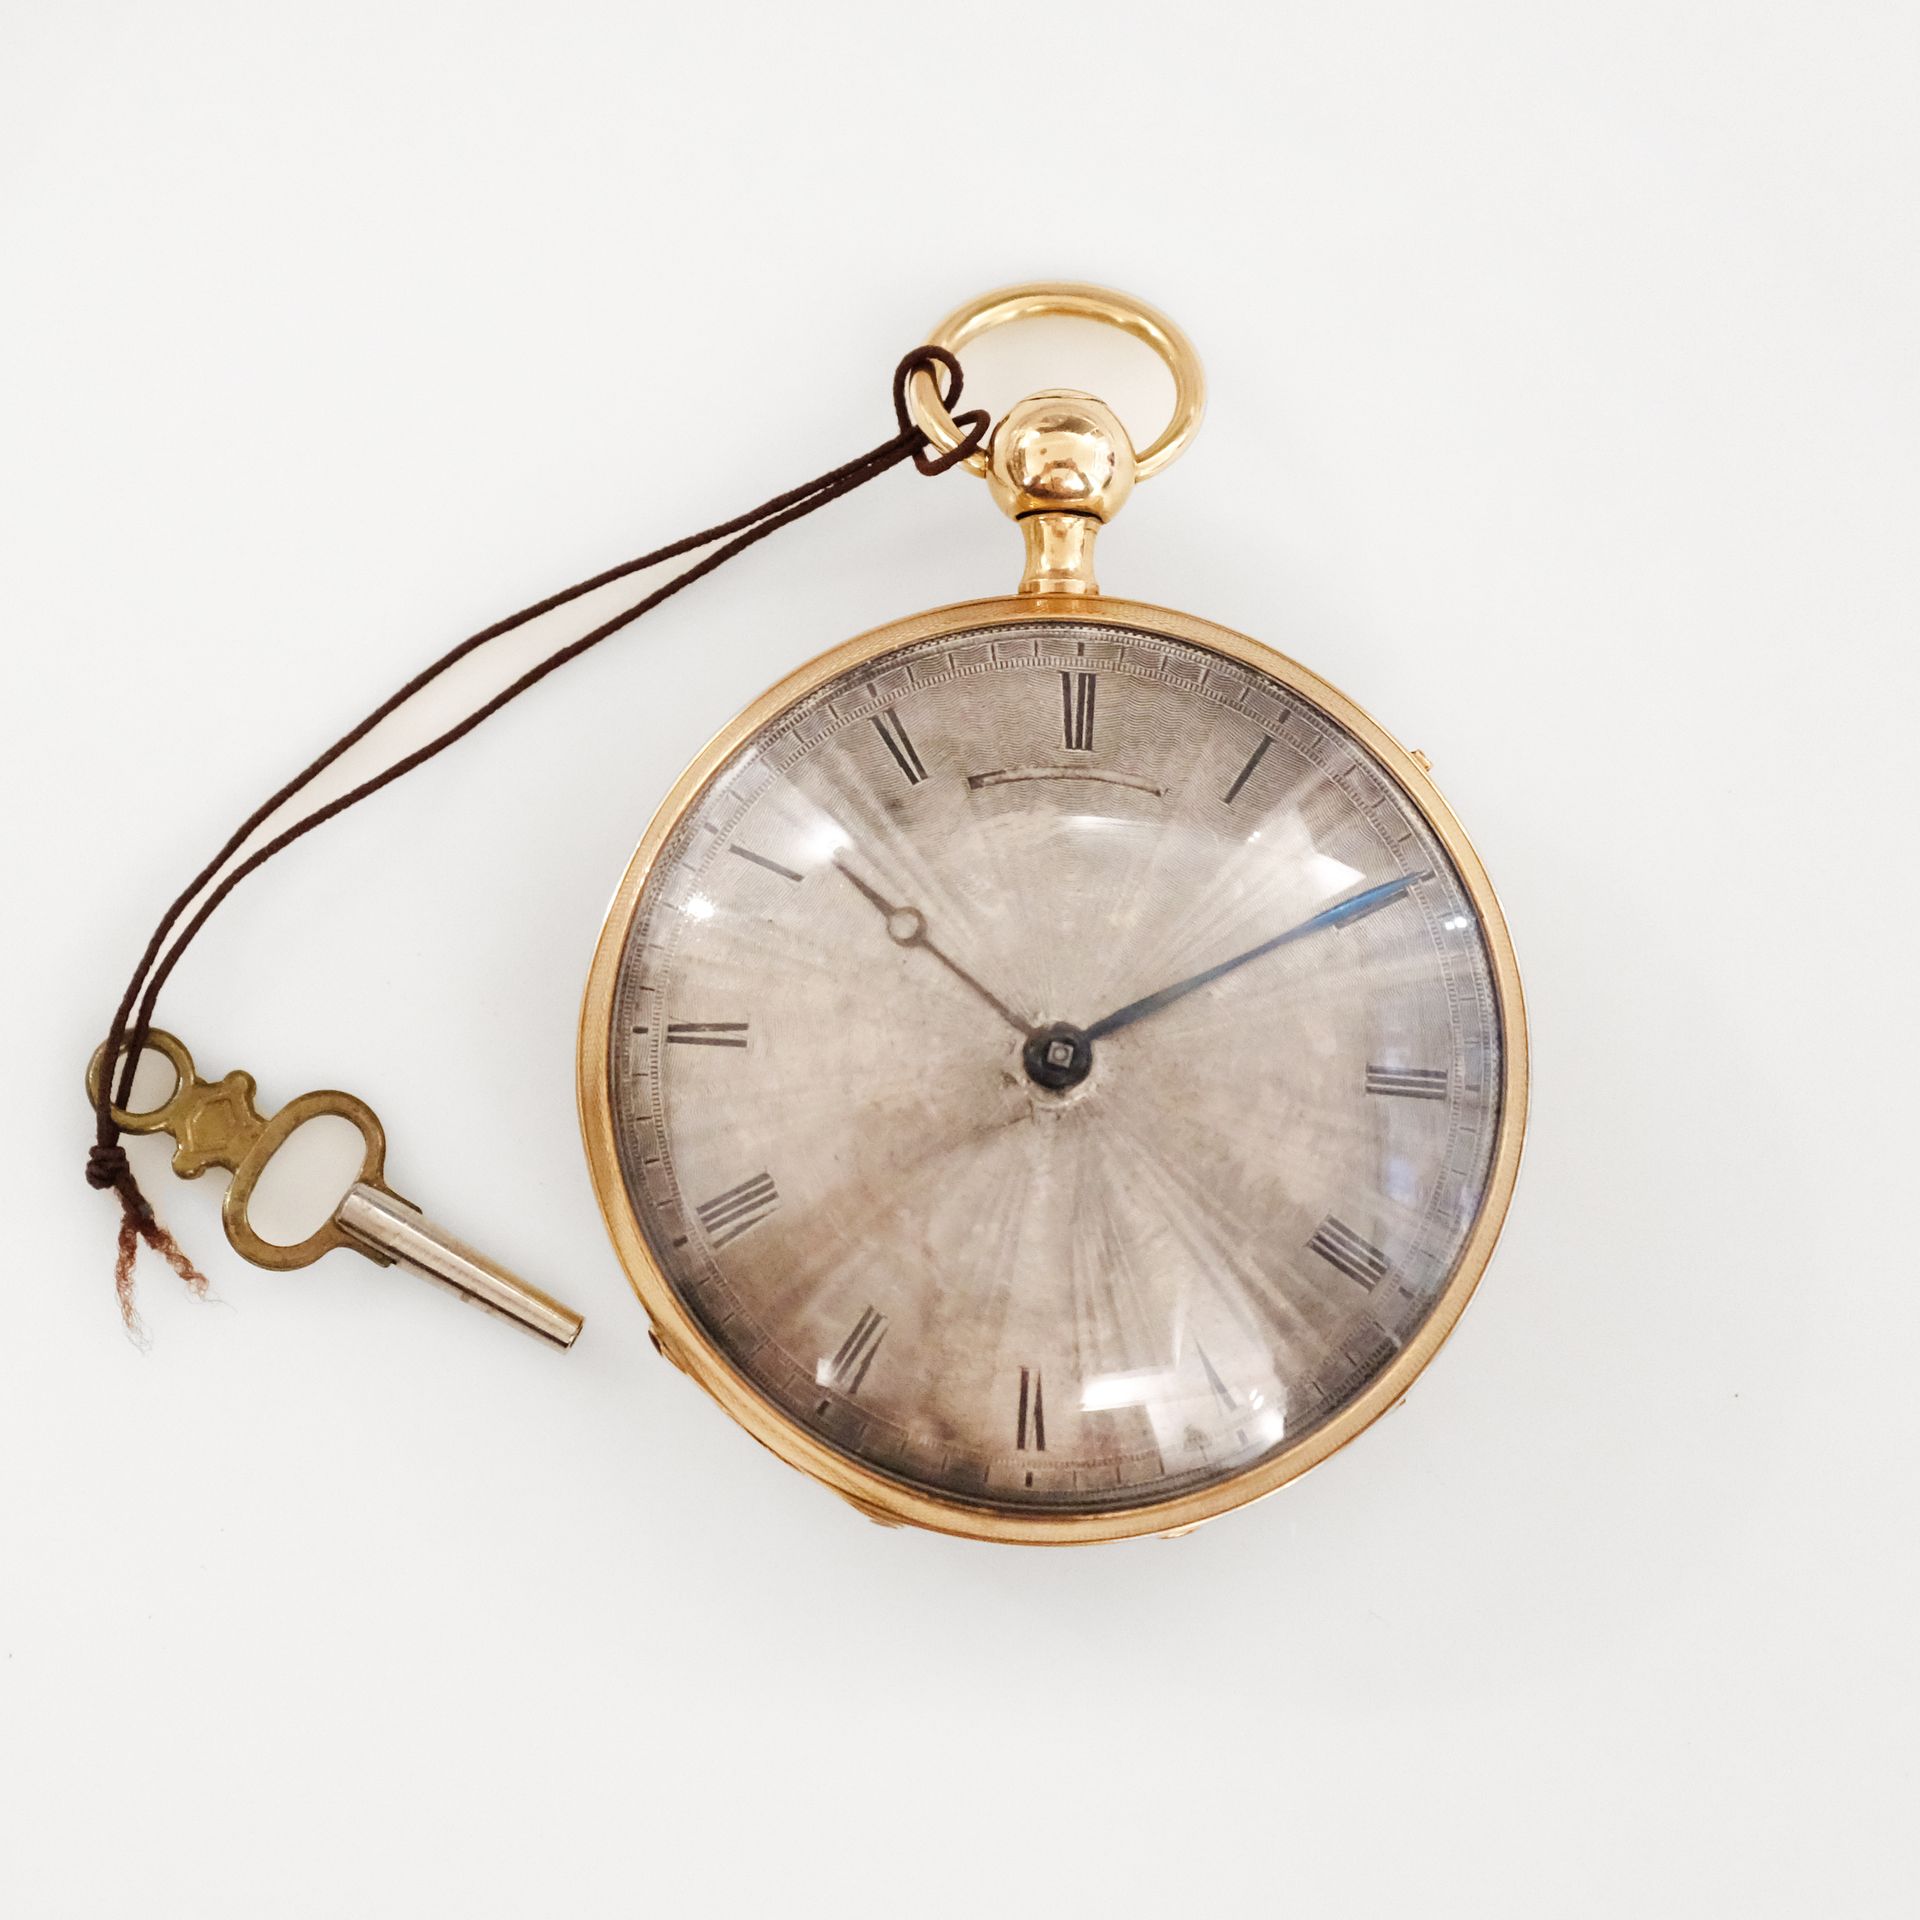 ANONYME No. 27740
Reloj de bolsillo de oro amarillo de 18 quilates (750) con son&hellip;